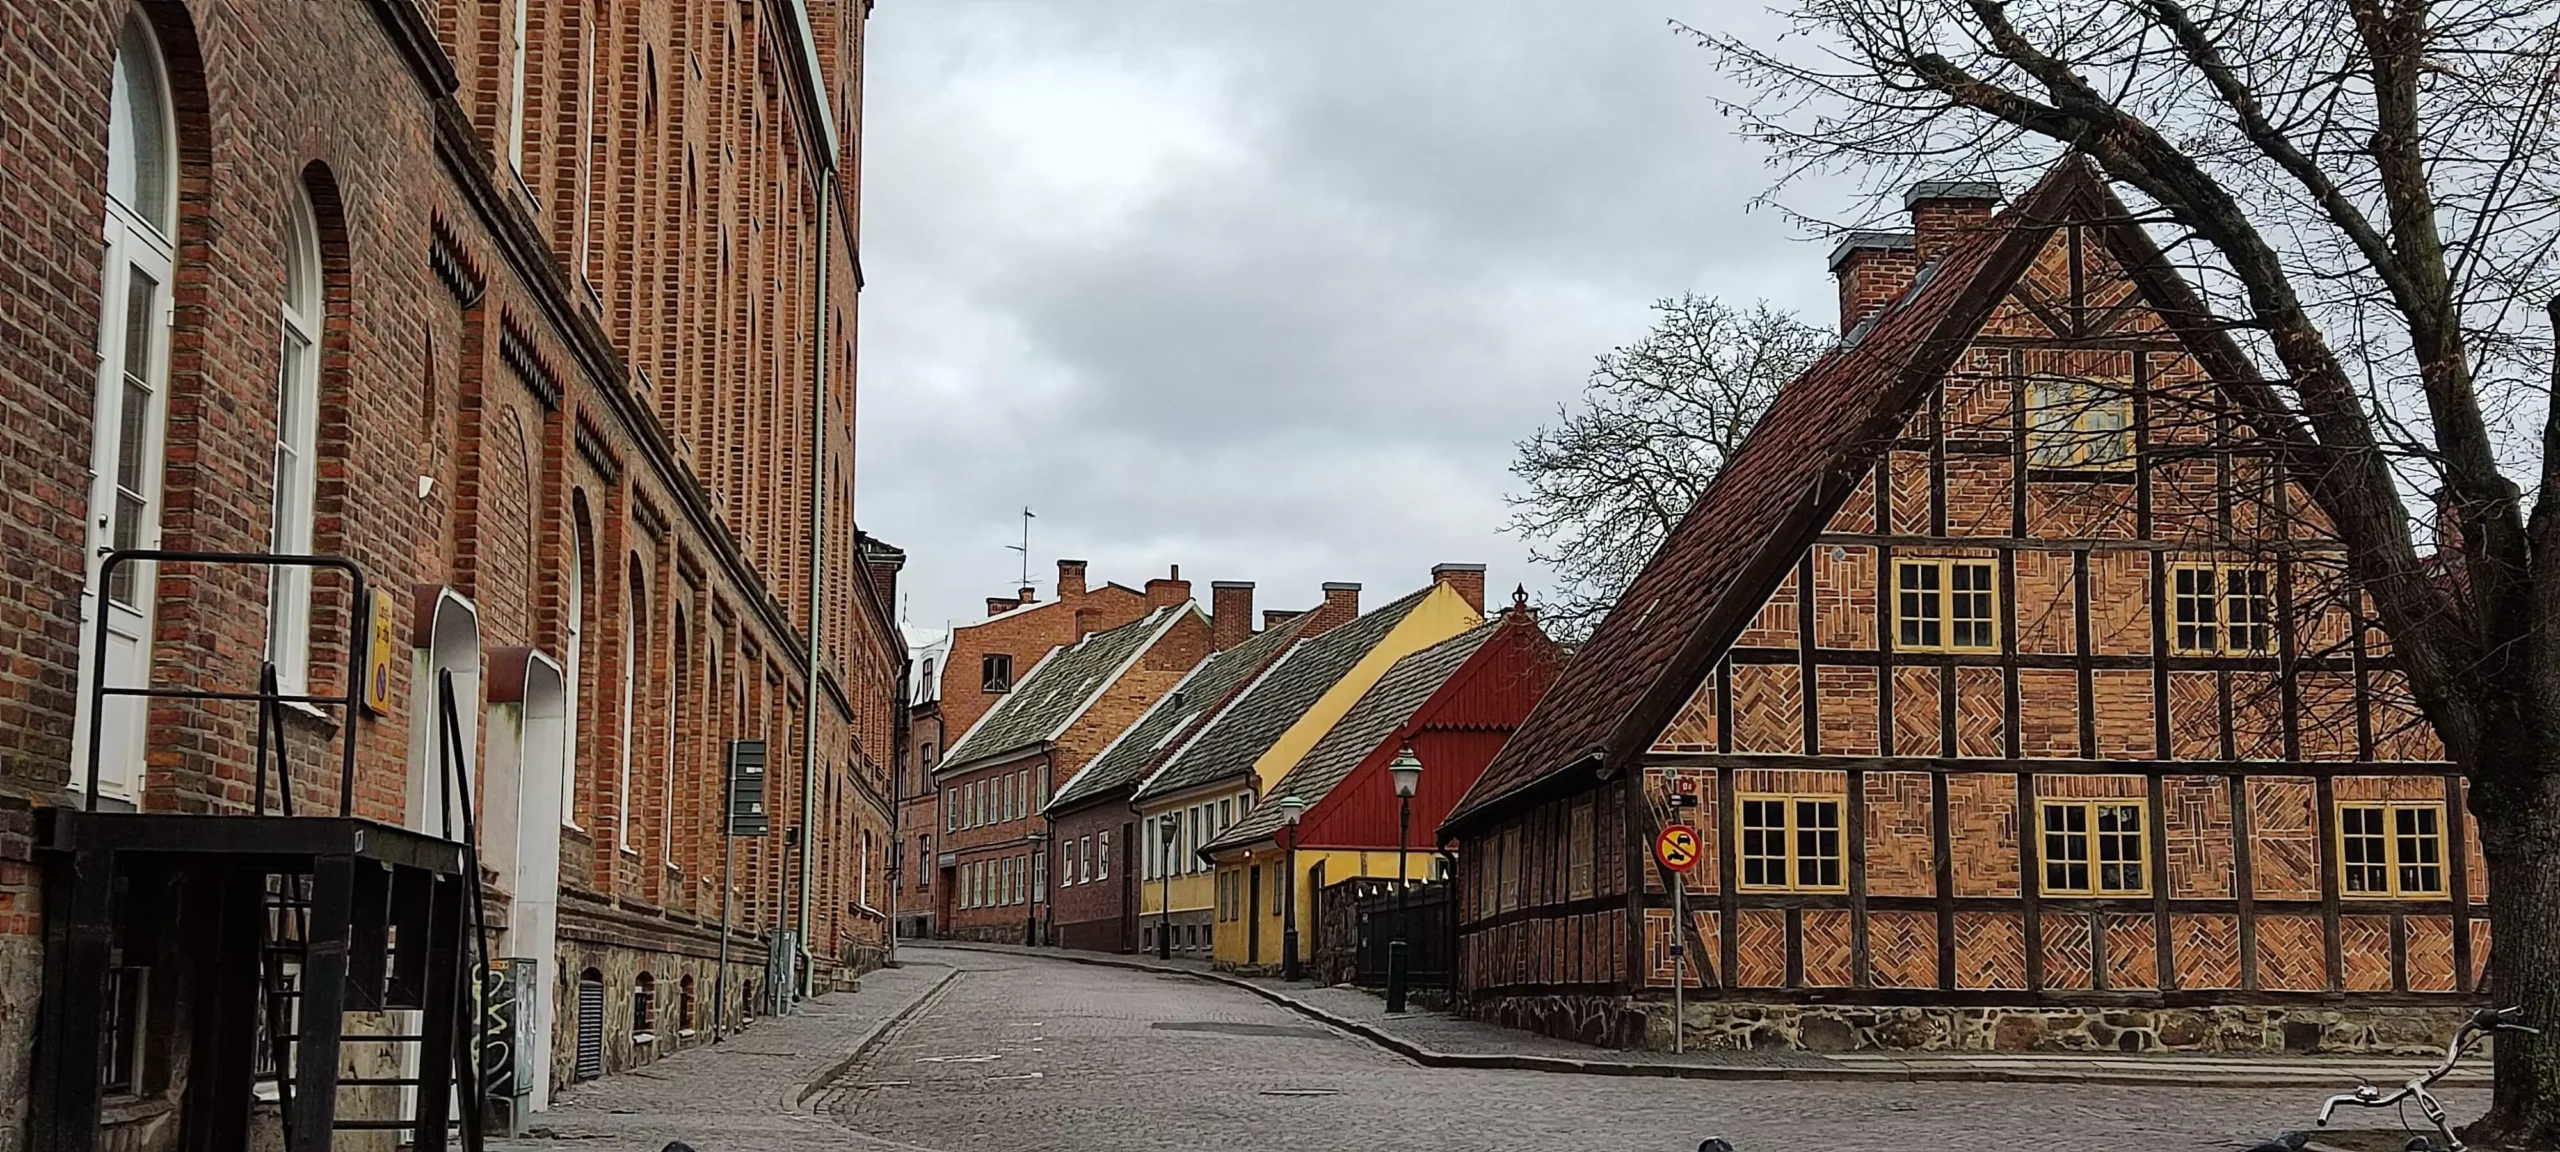 Ταξίδι στη Σουηδία: Ανακαλύπτοντας την Πανεπιστημιακή Πόλη του Lund